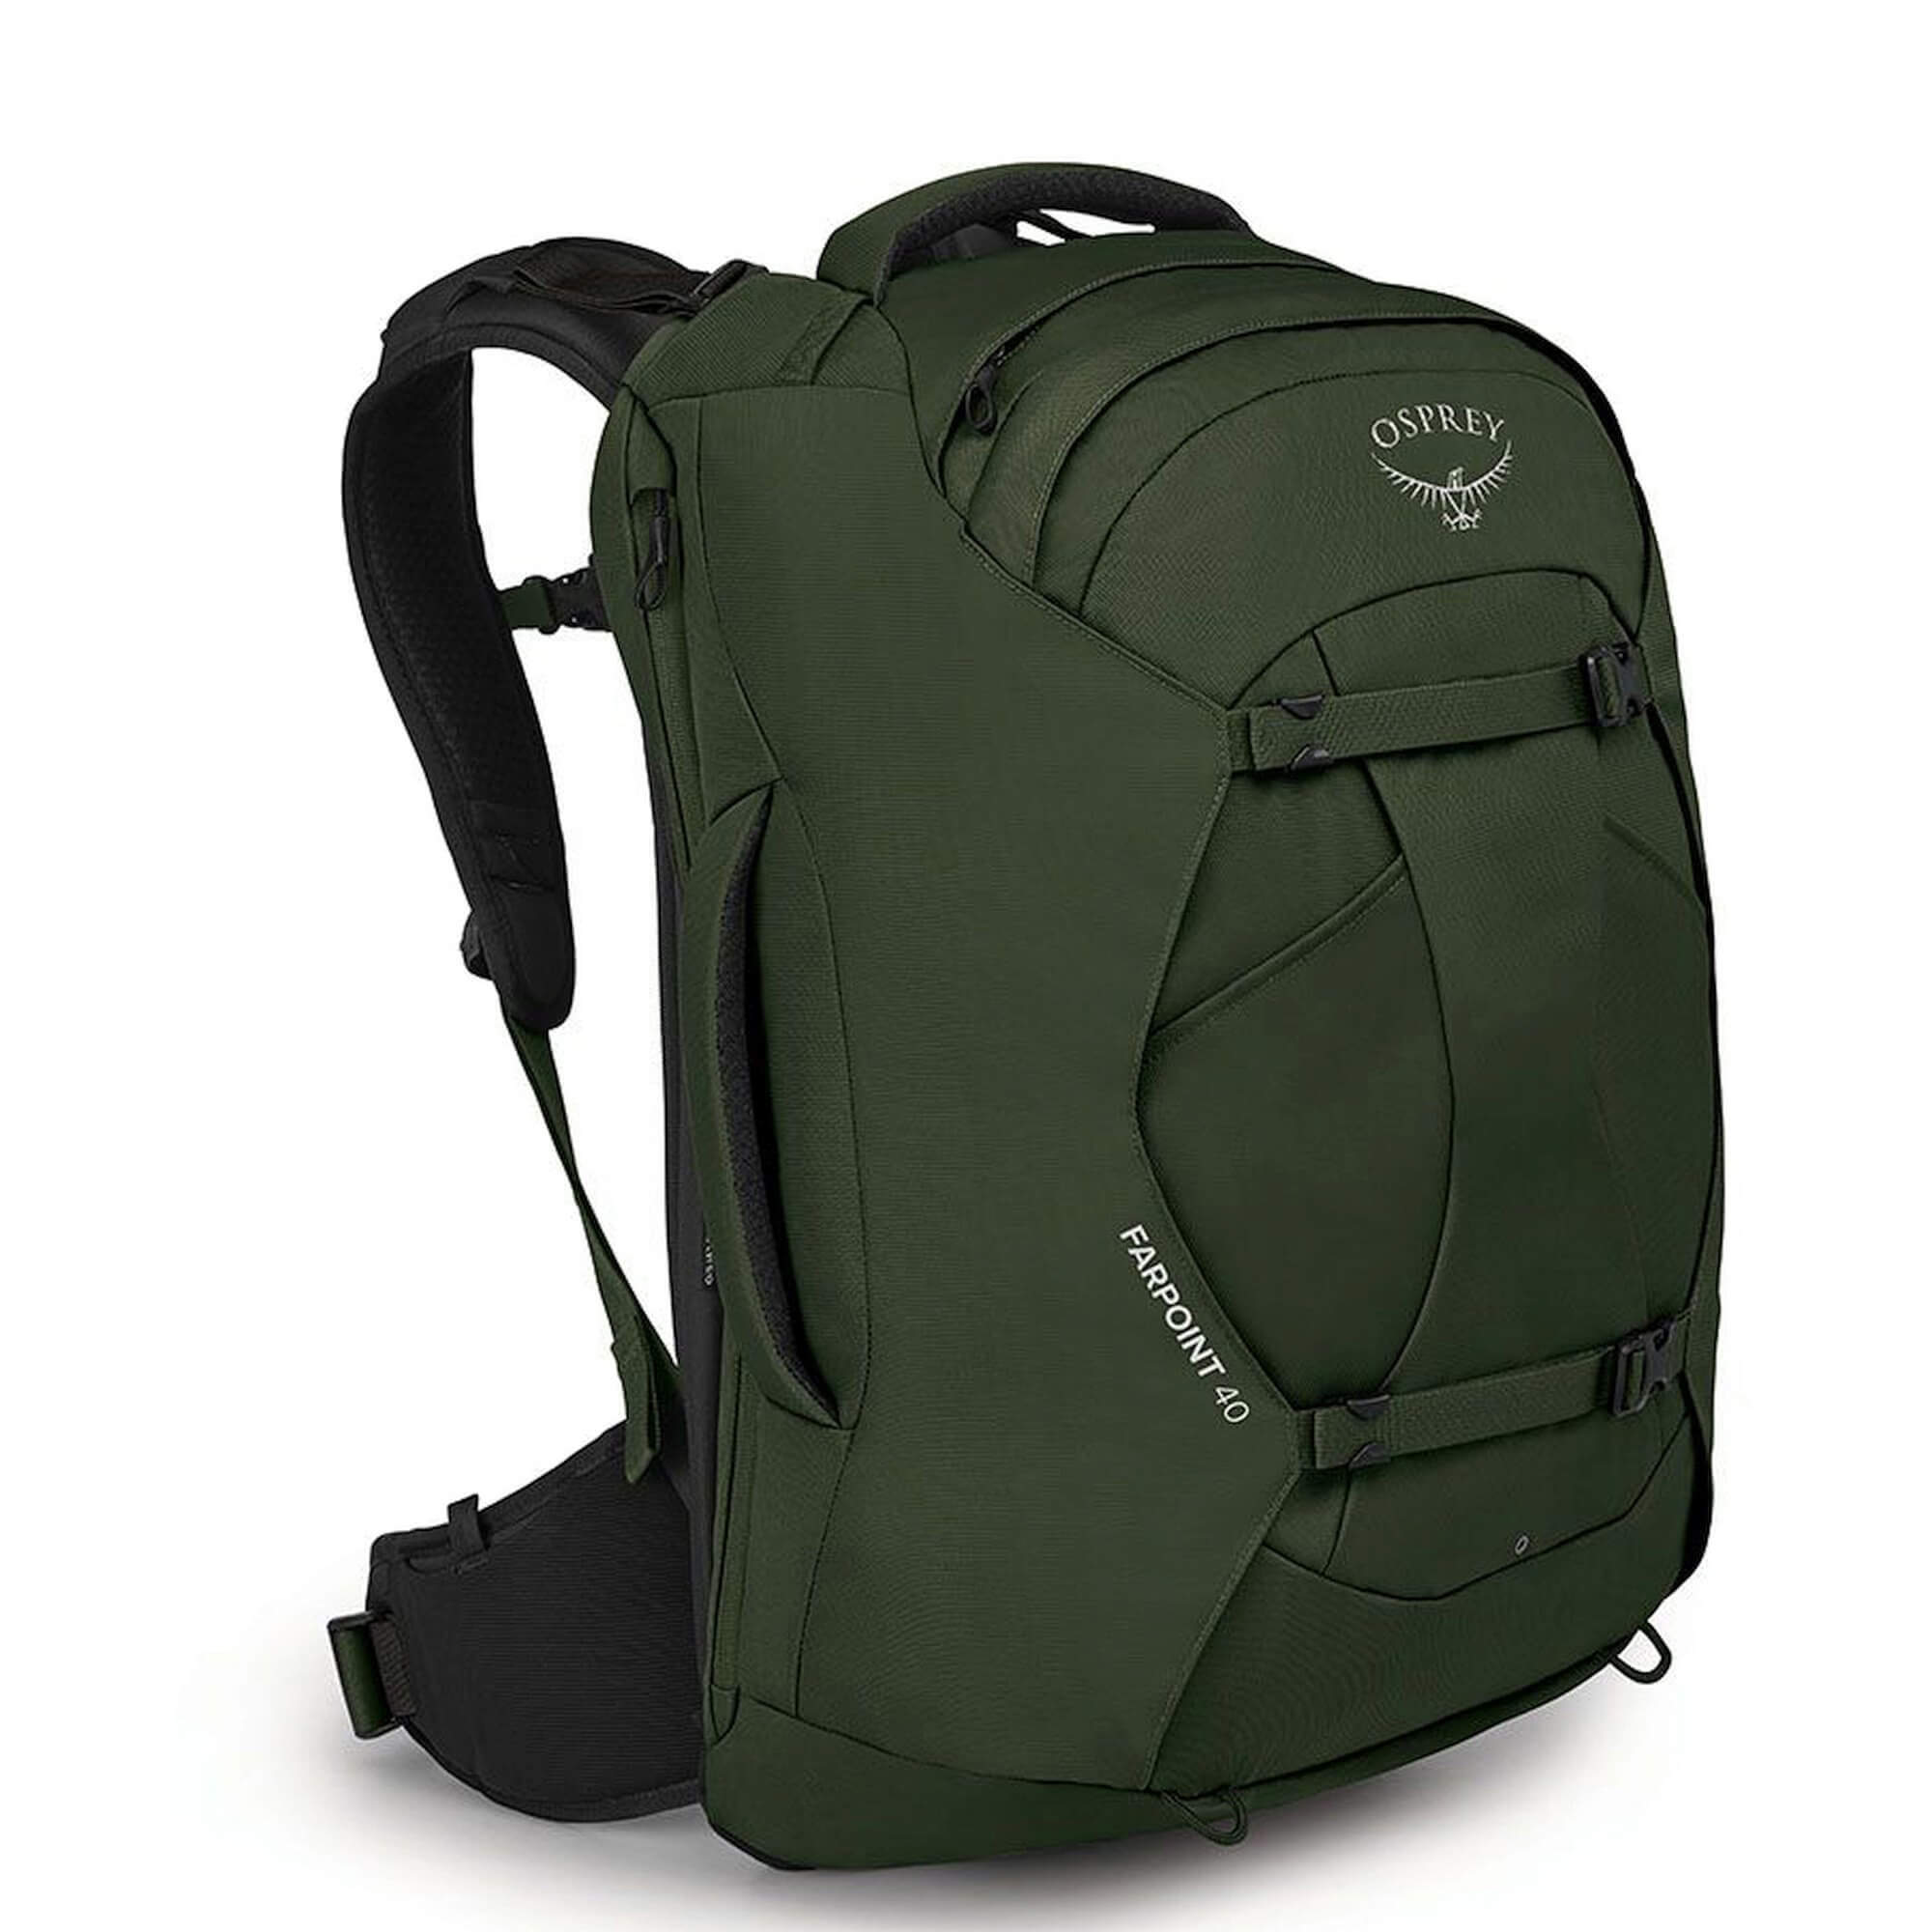 Рюкзак Osprey Farpoint 40 Reise 55 cm, цвет gopher green рюкзак osprey farpoint 40 reise 55 cm цвет gopher green